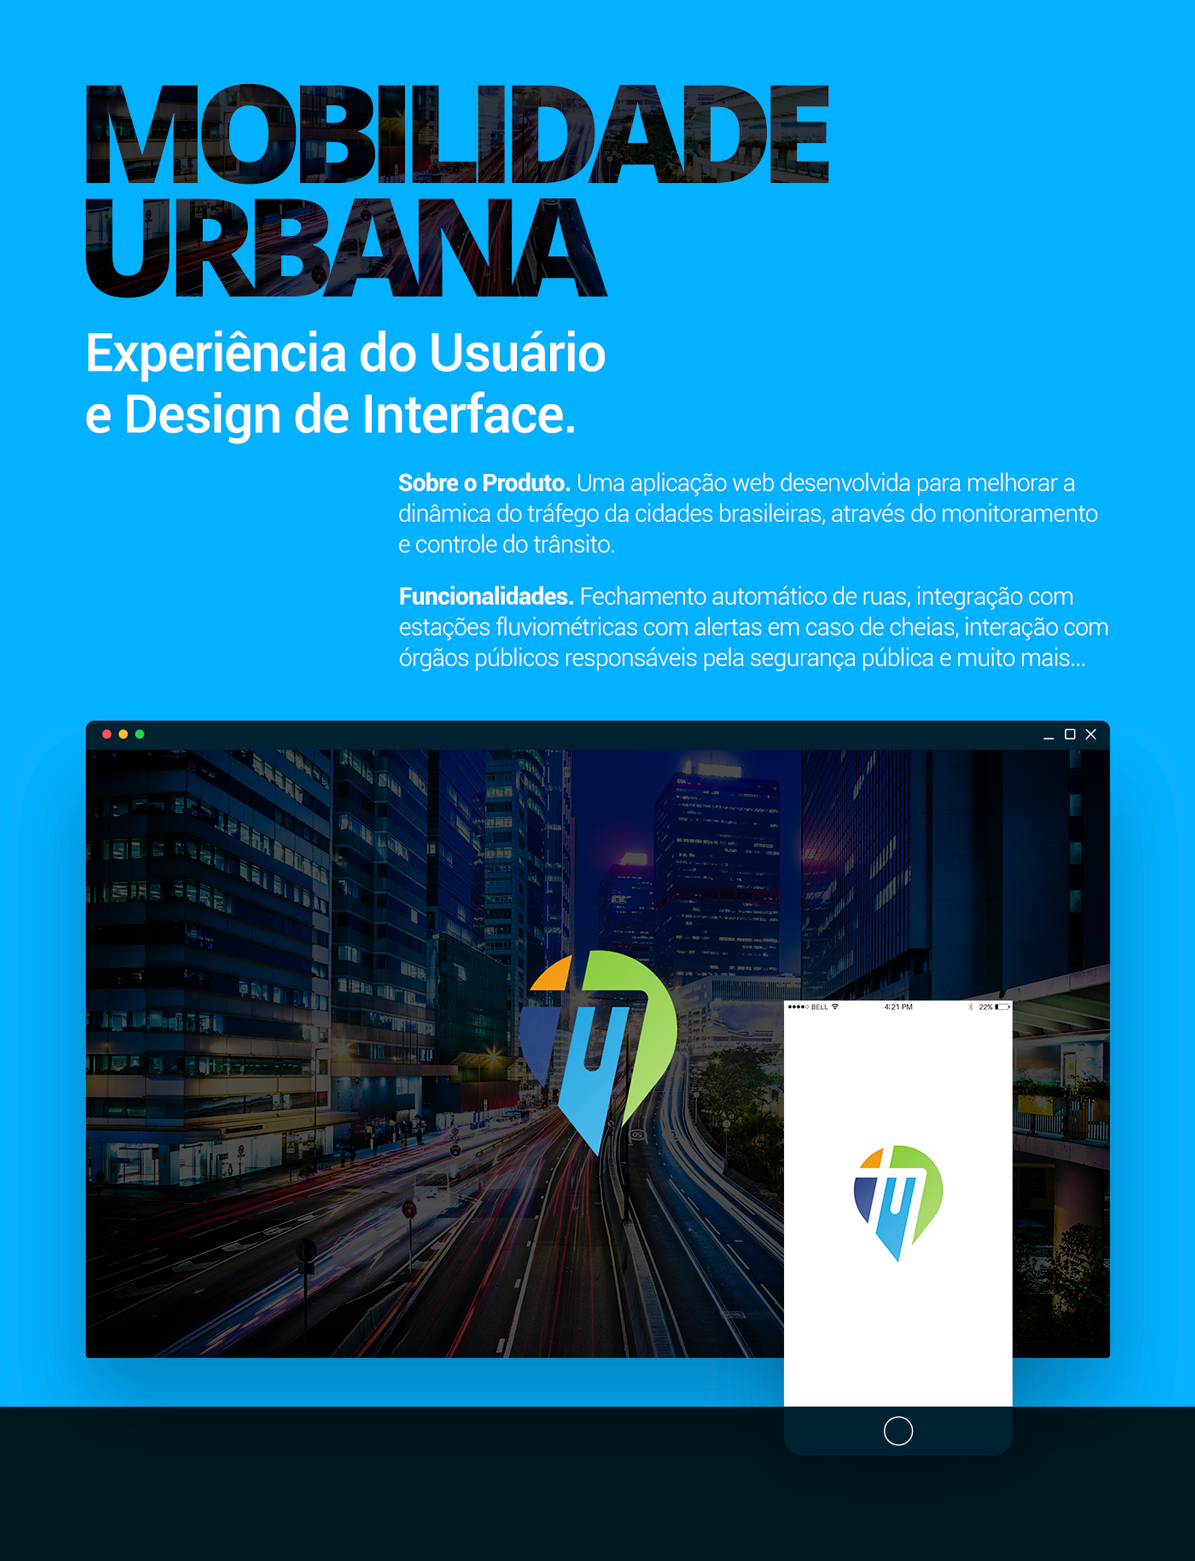 Adobe Portfolio Mobilidade Urbana Waze google map Microsoft Azure design de interface experiência do usuário user experiece interface design Web Design 